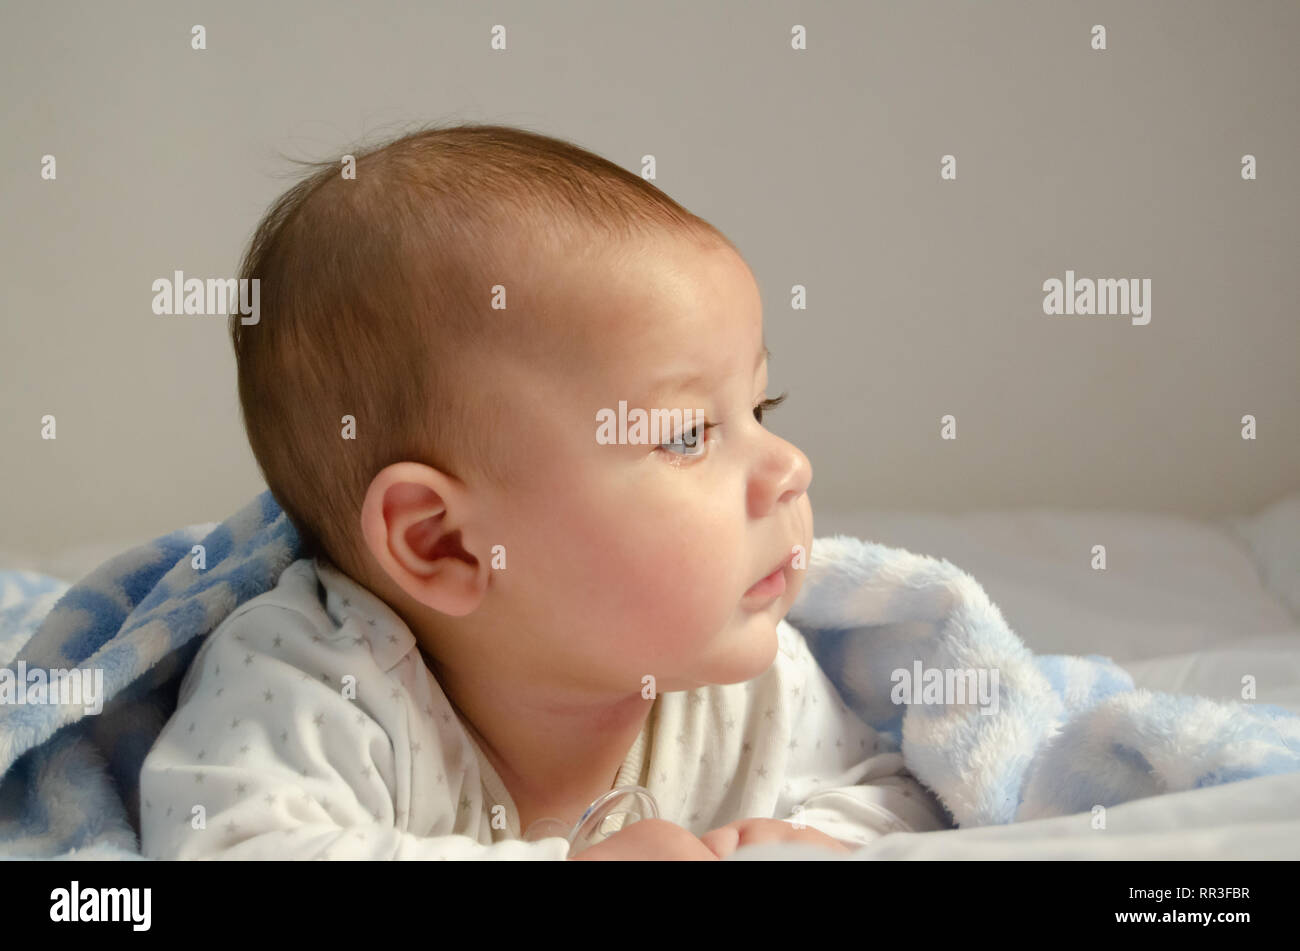 Carino 4 mesi baby boy avente pancia tempo sul panno bianco coperto con blue blanket - Salute e infanzia felice concetto Foto Stock